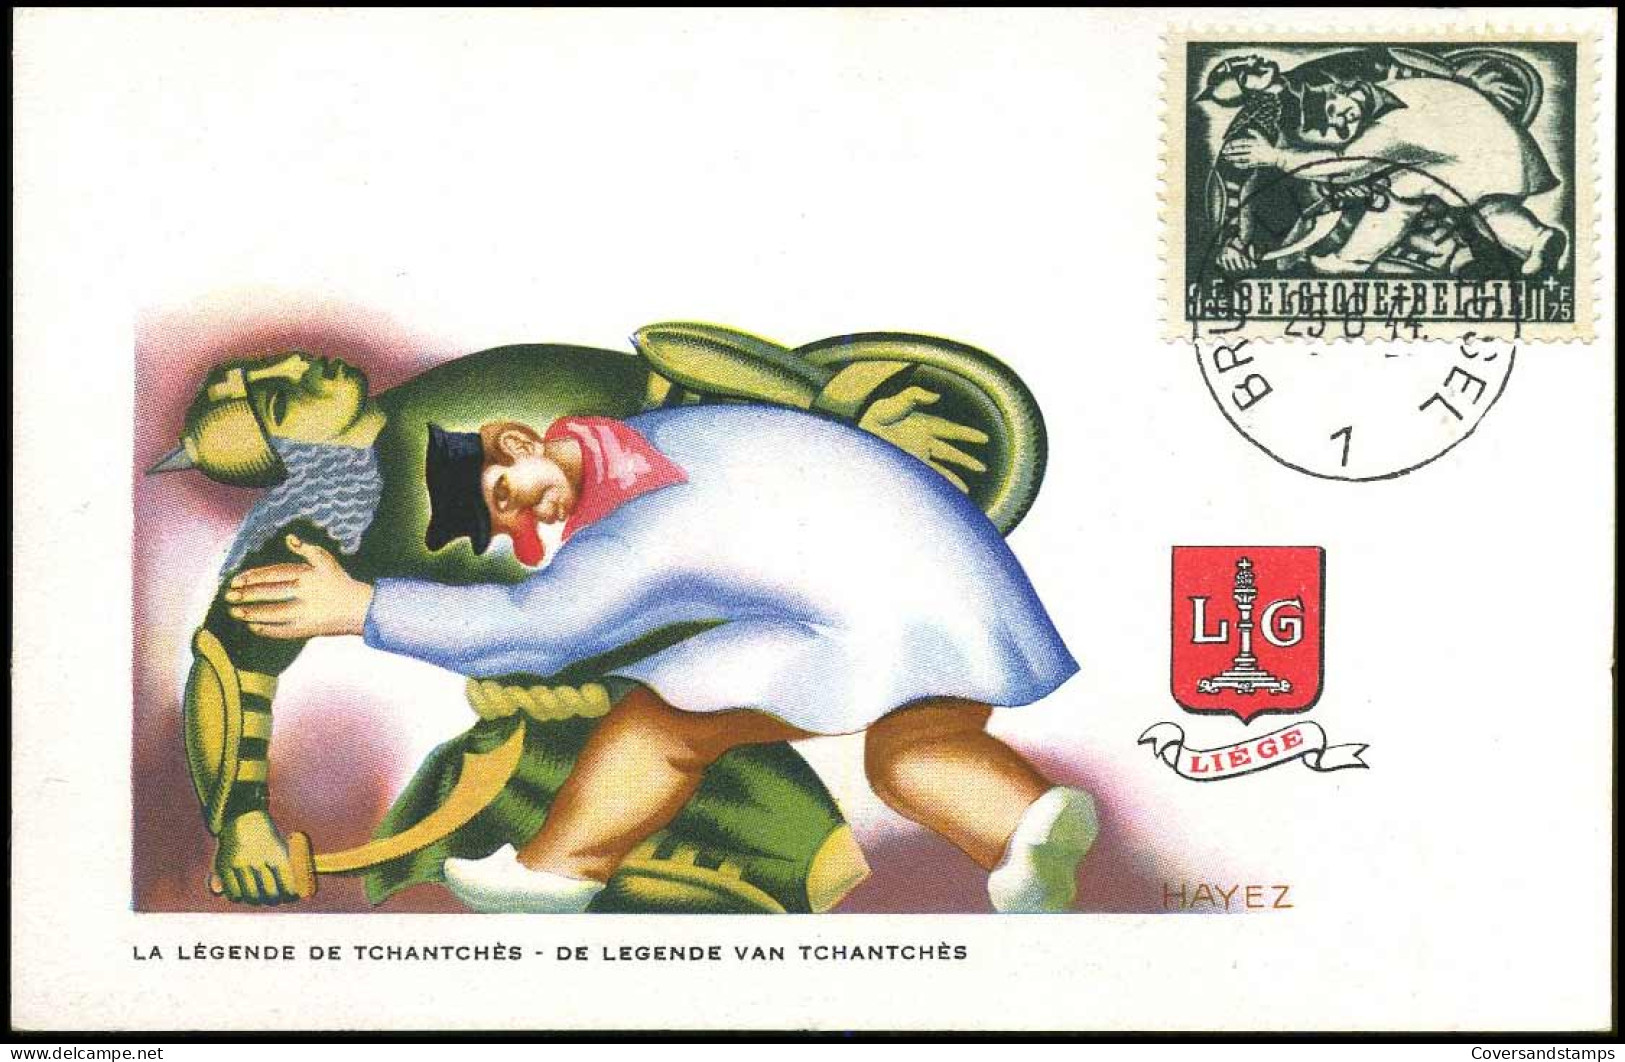 653/60 - MK - Tuberculosebestrijding, Belgische legenden